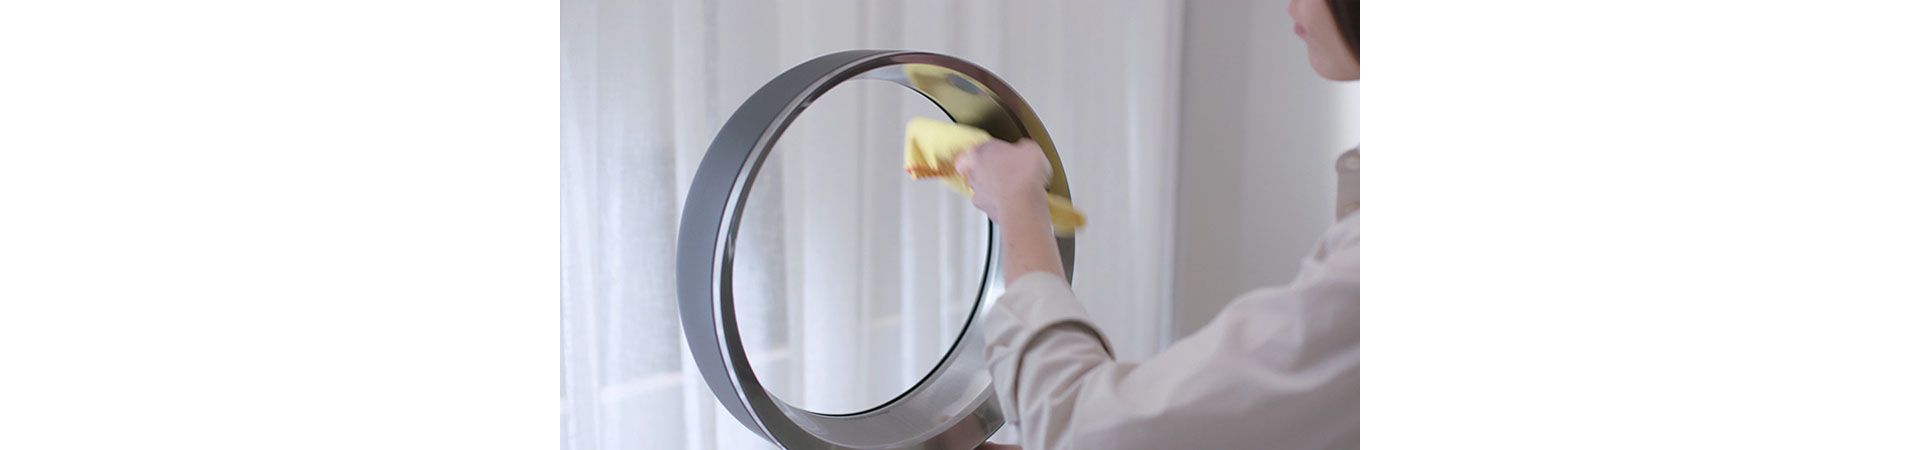 Woman cleaning Dyson fan